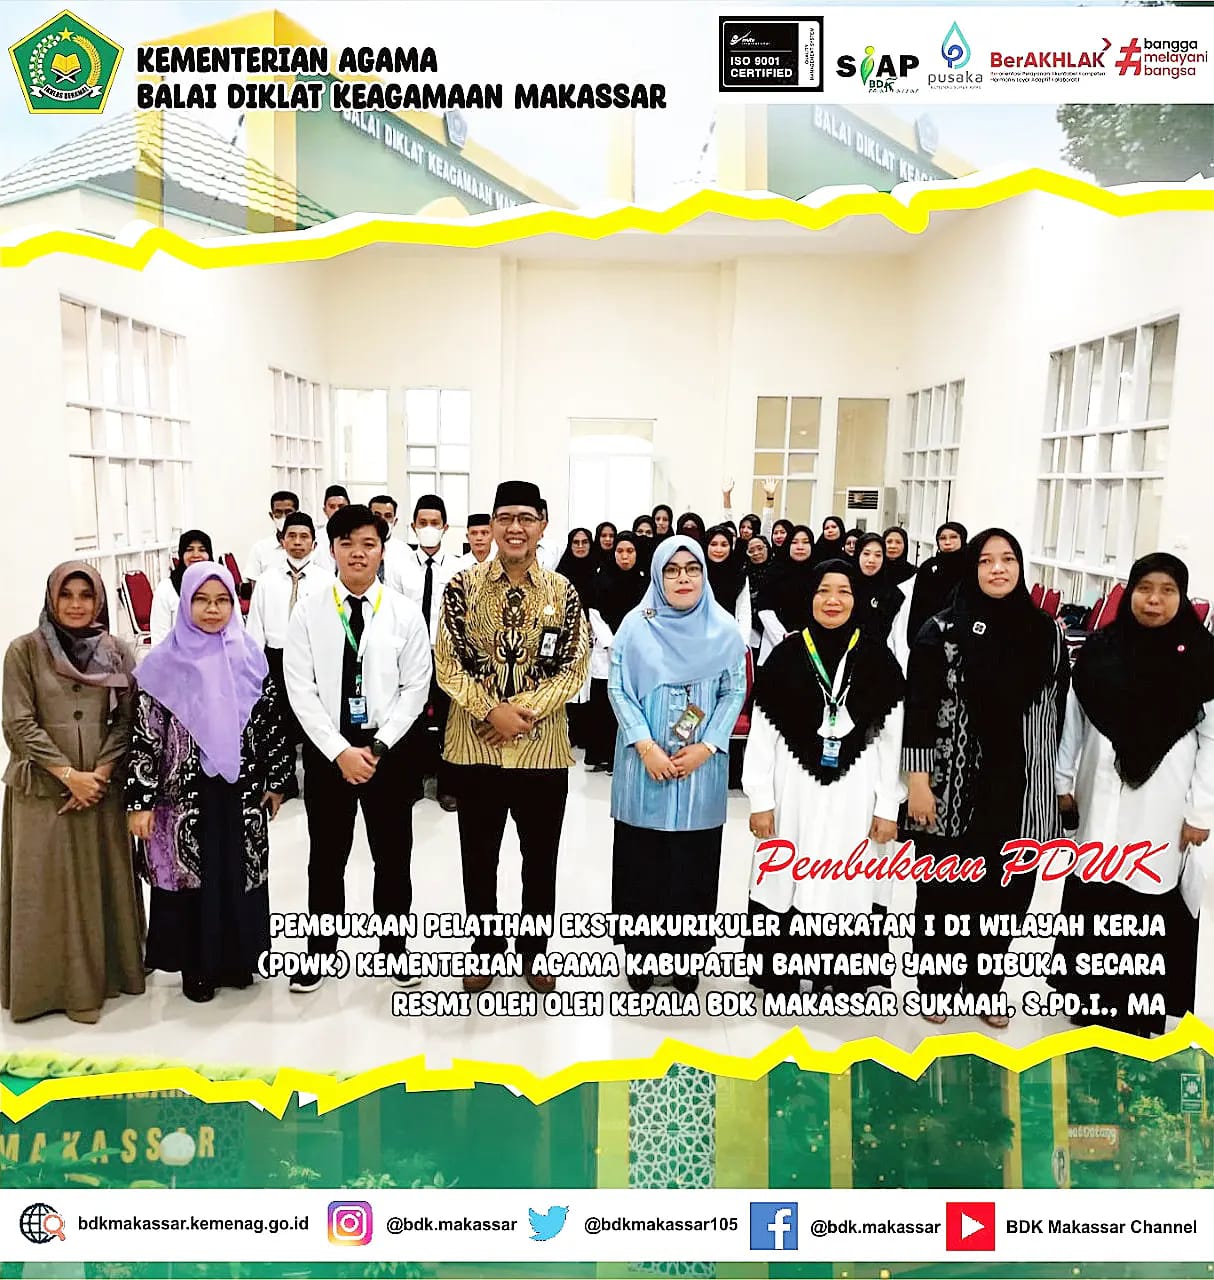 Pelatihan Ekstrakurikuler  Di Wilayah Kerja (PDWK) Kementerian Agama Kabupaten Bantaeng